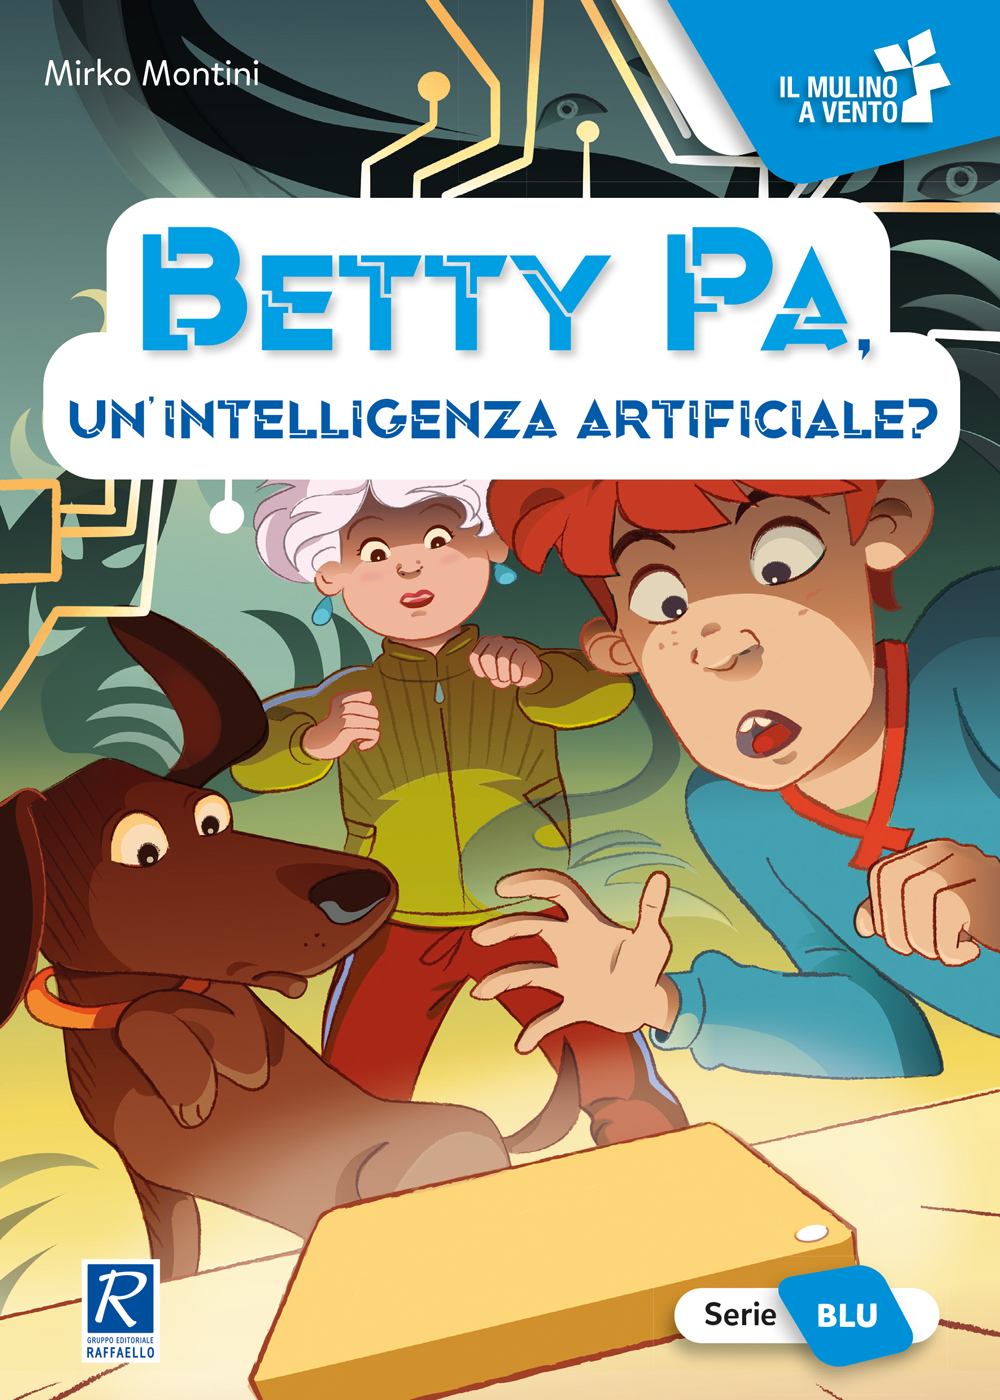 Betty Pa, un’intelligenza artificiale?